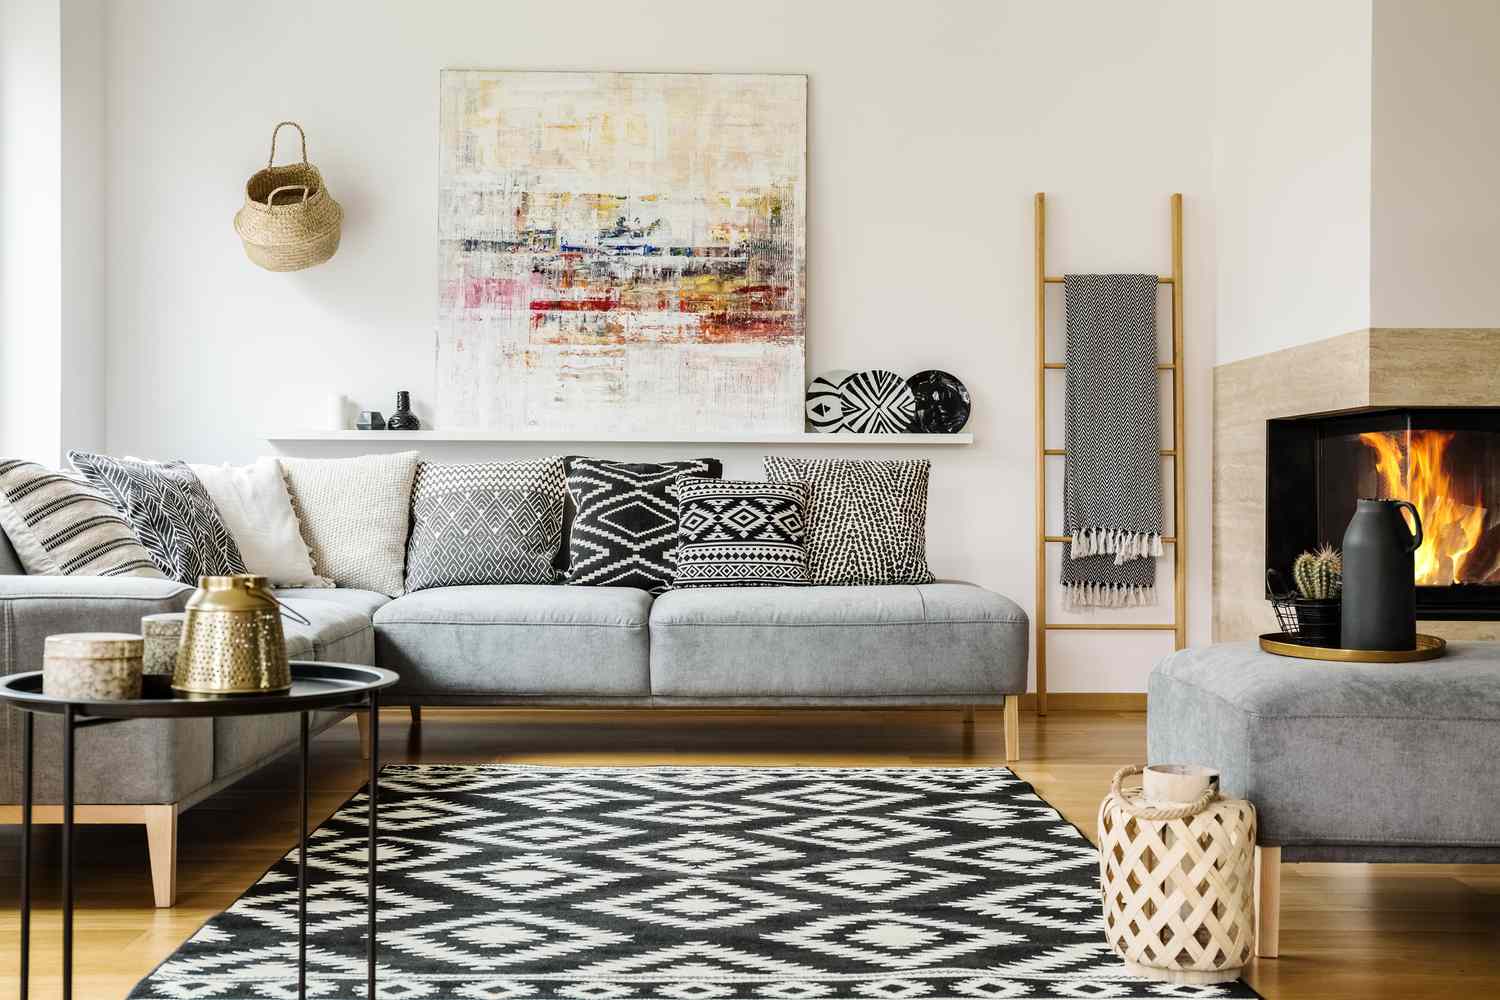 Gemusterter Teppich in einem dekorativen Wohnzimmer mit Gemälde über der Couch. Echtes Foto